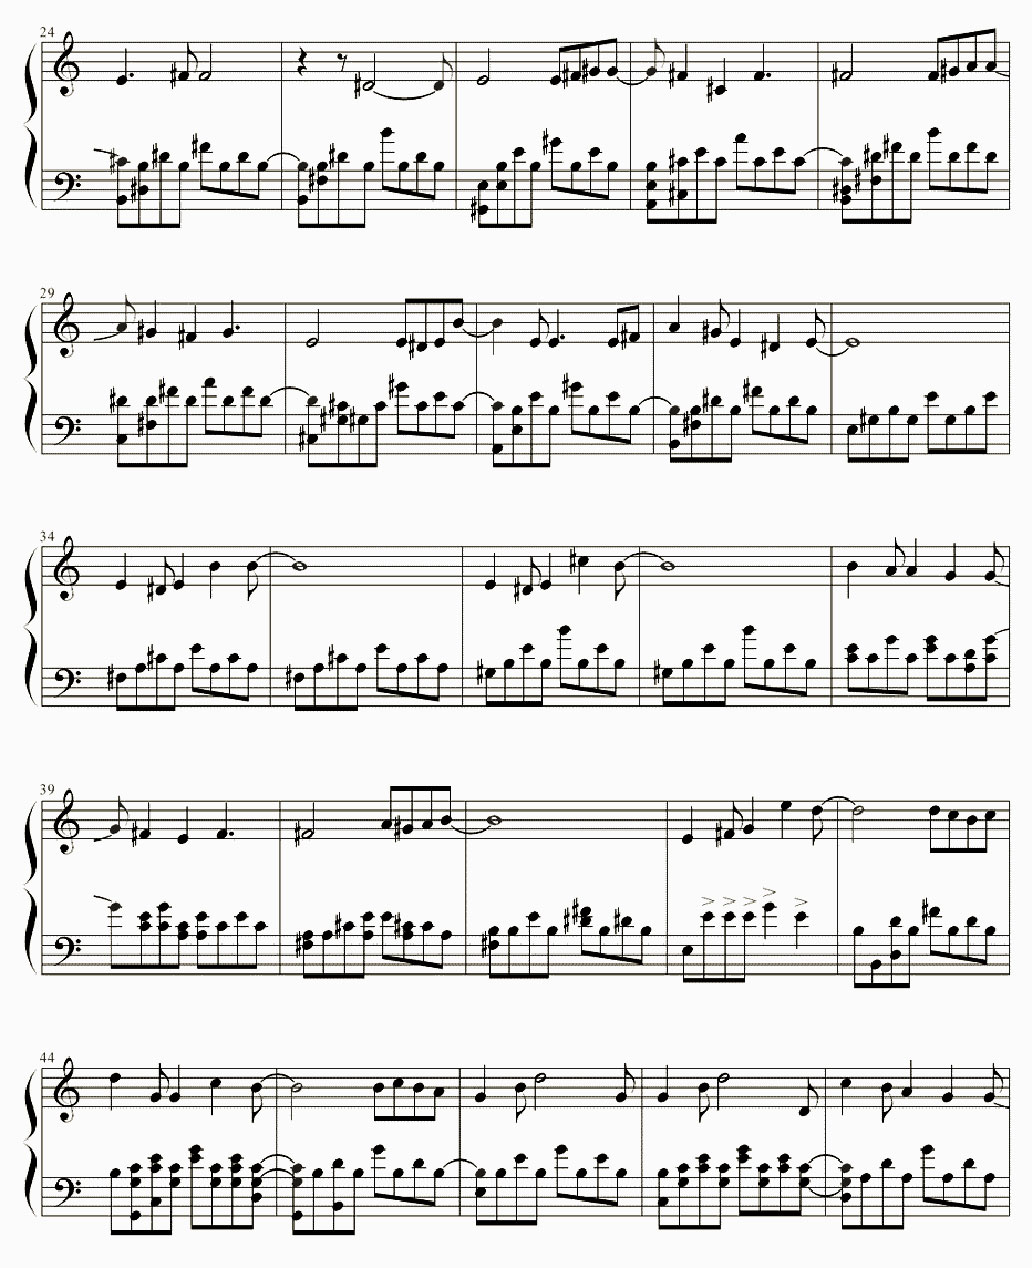 I say yes piano sheet music notes